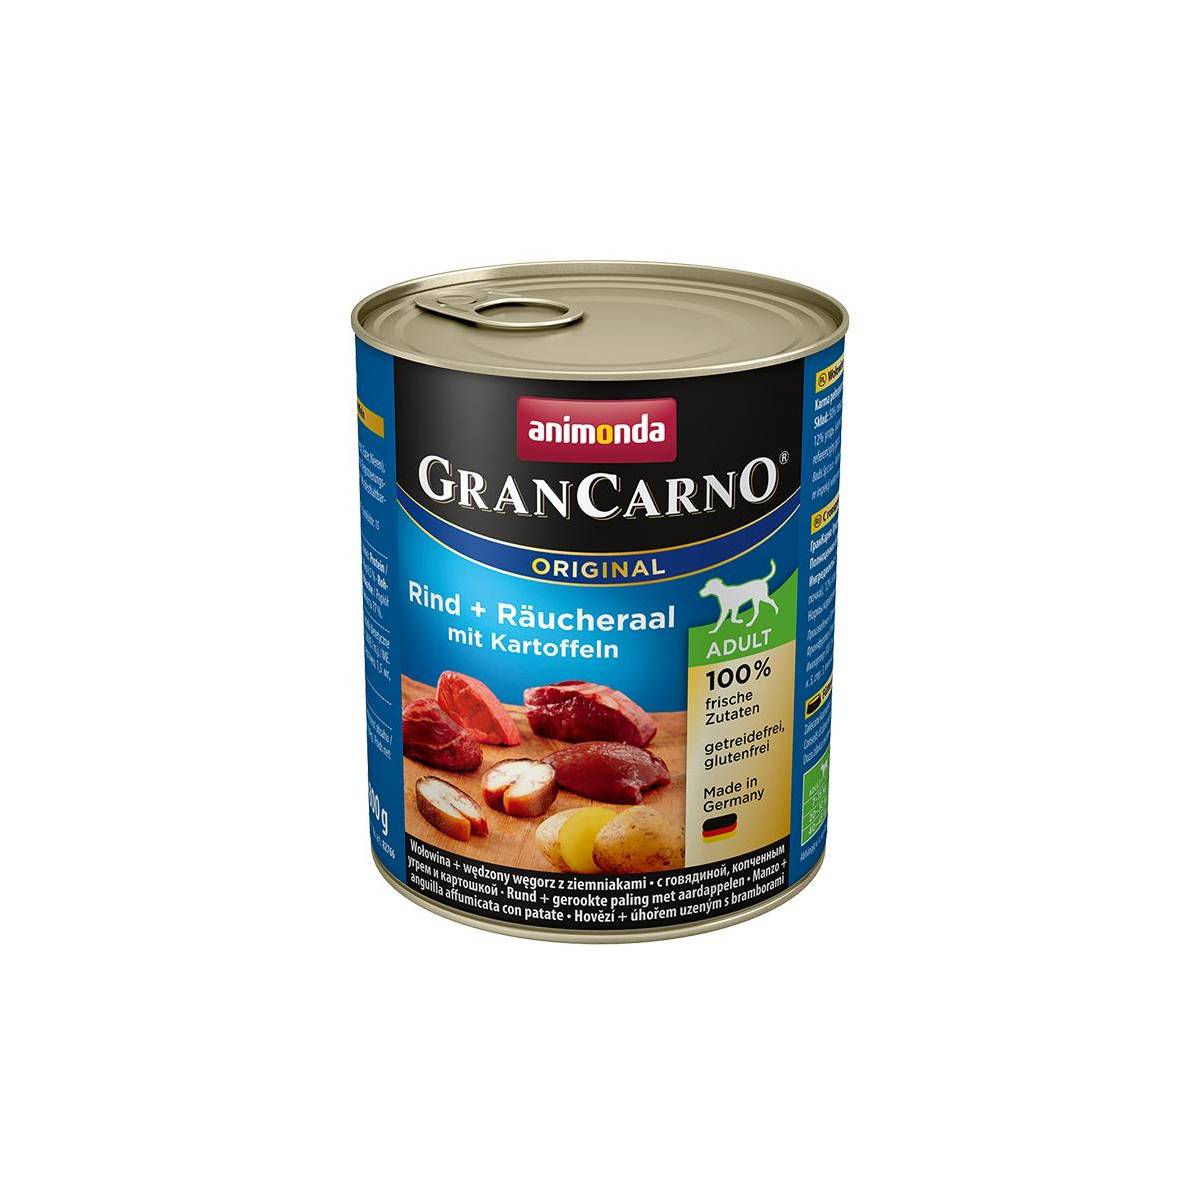 Animonda grancarno orginal adult puszki wołowina węgorz ziemniak 800 g